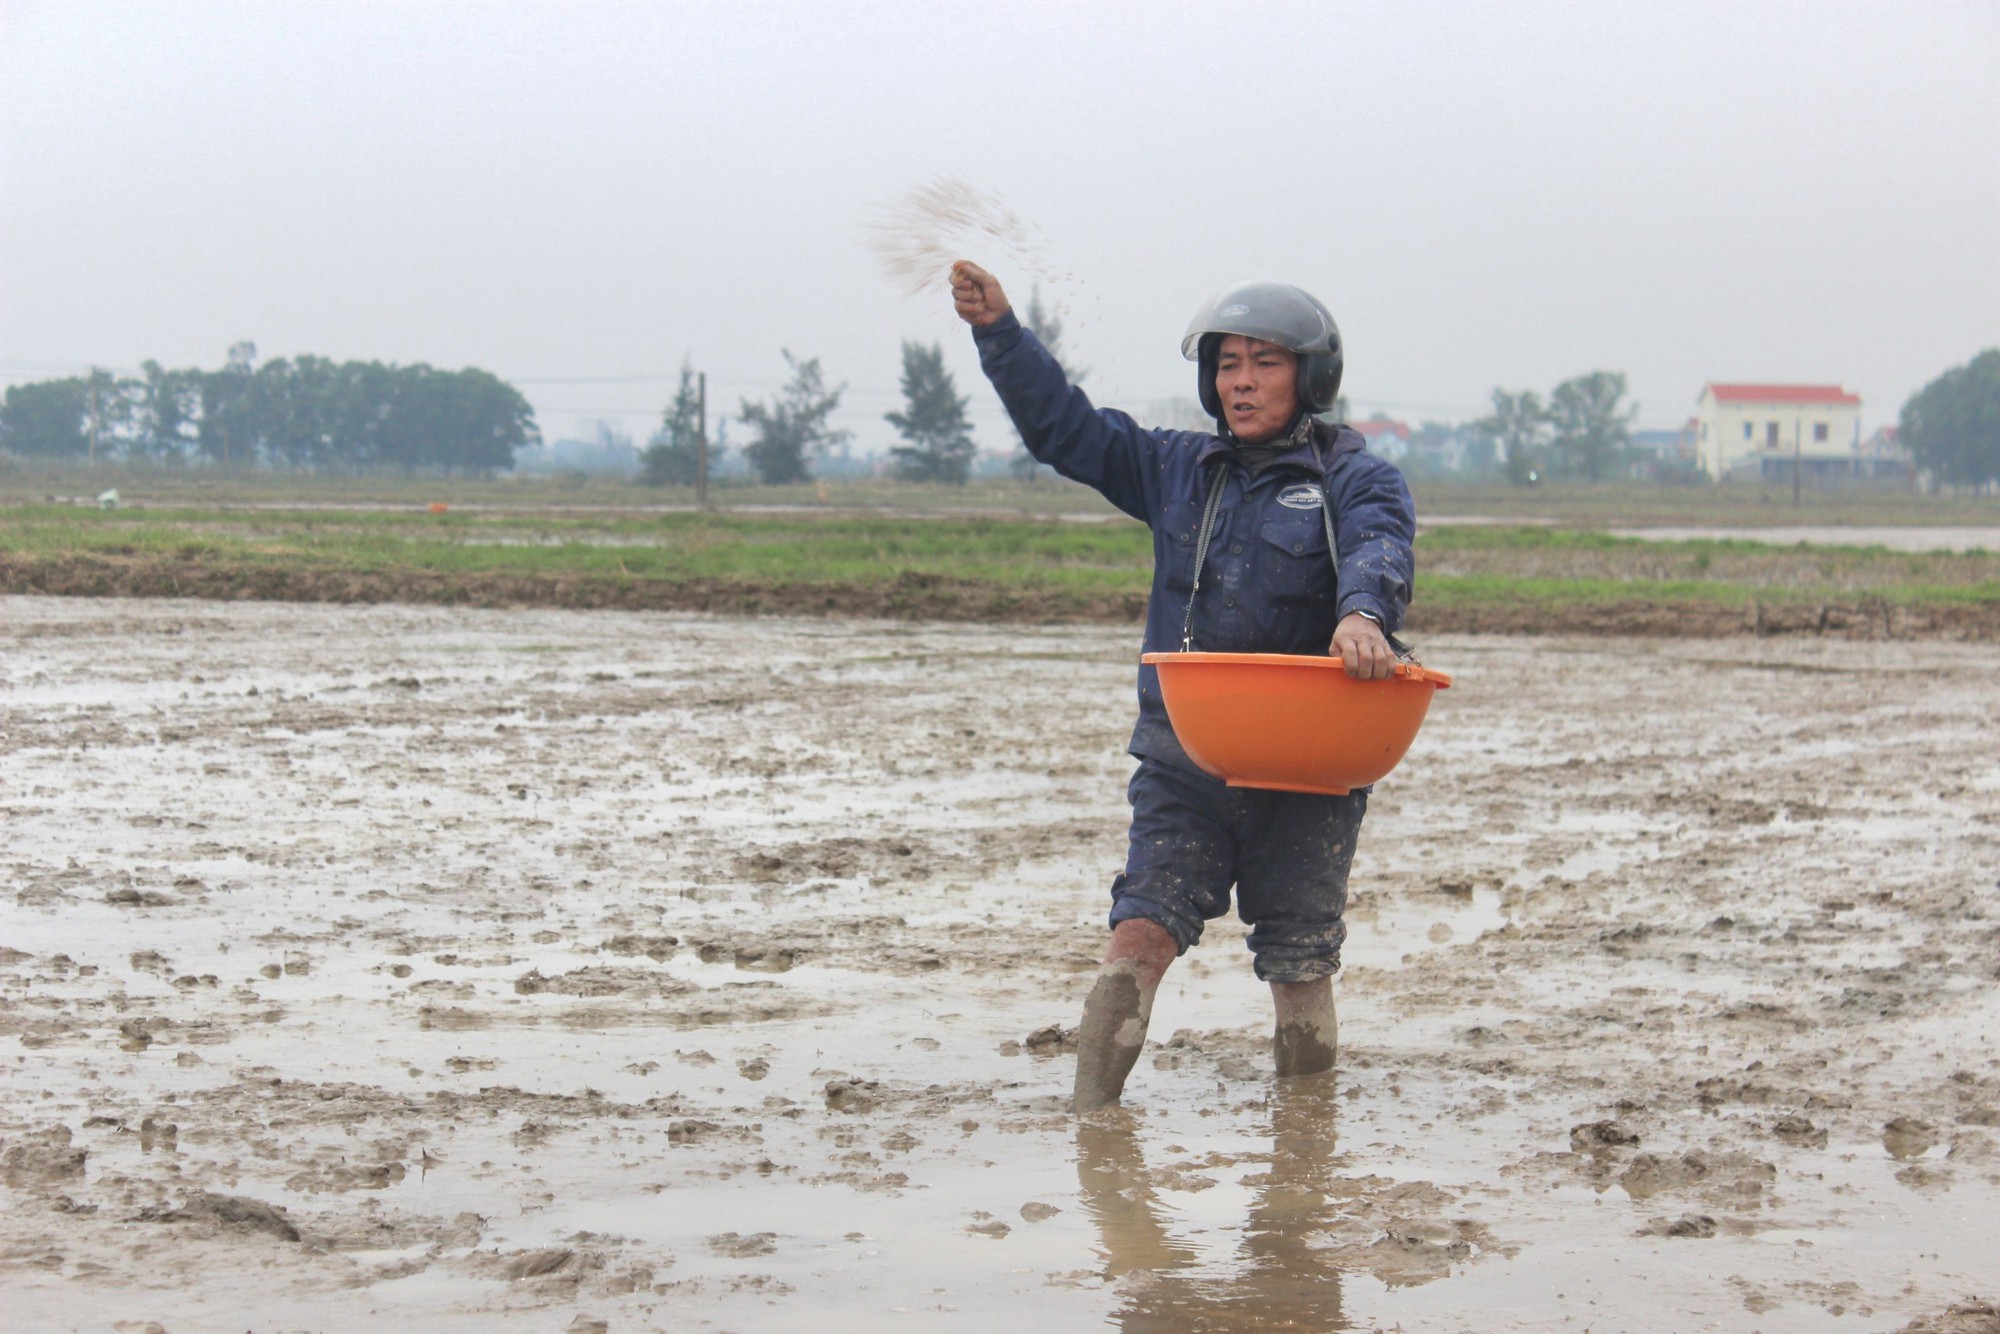 Nông dân Quảng Bình ra đồng trong giá rét cuối năm, kỳ vọng vụ mùa bội thu trên cánh đồng liên kết - Ảnh 1.